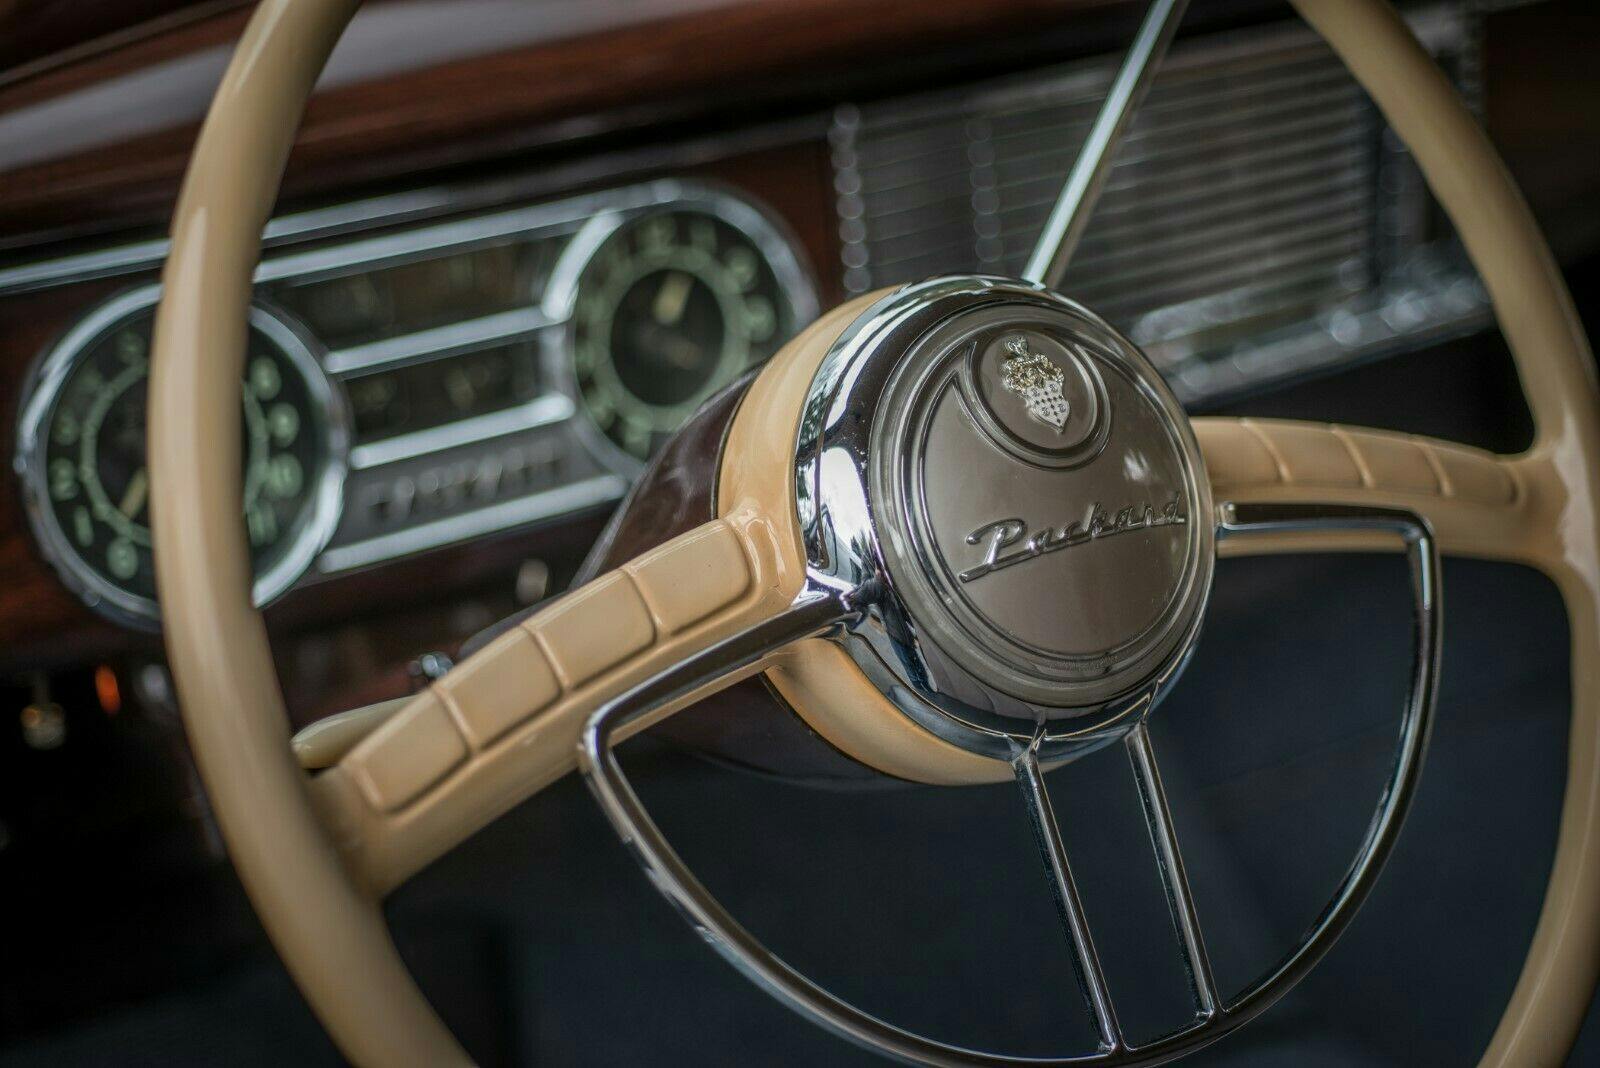 1949 Packard Deluxe Club Sedan - Close-up steering wheel